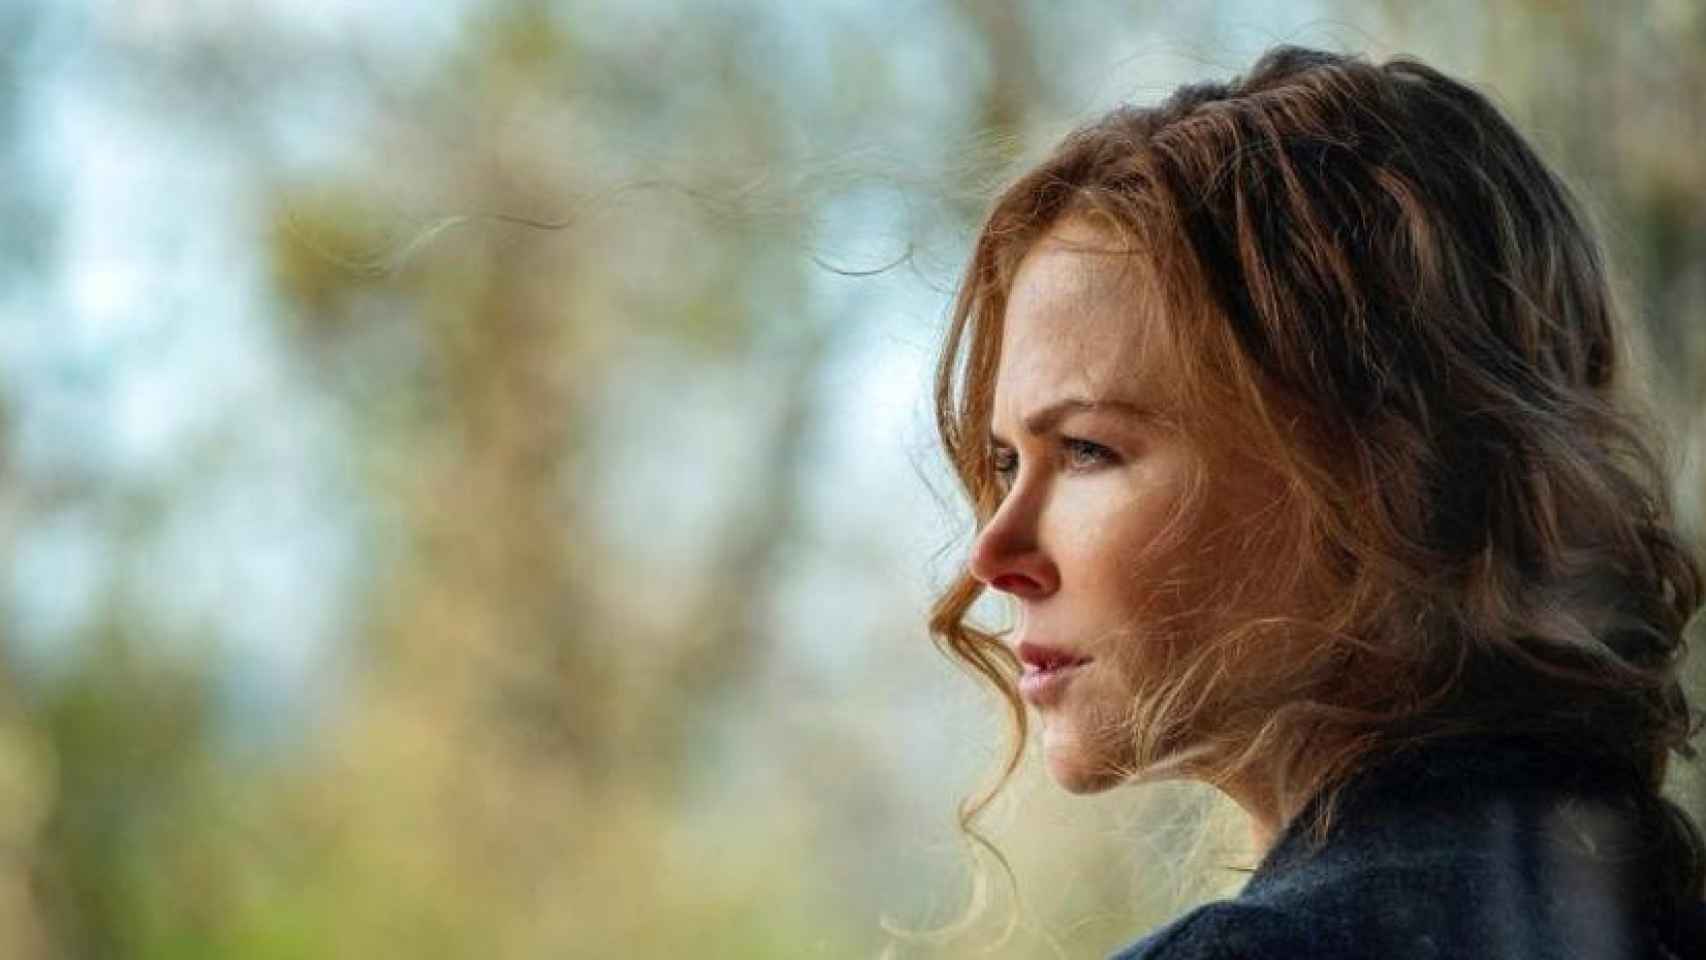 Nicole Kidman, diagnosticada como persona altamente sensible, en una escena de la serie 'The Undoing'.